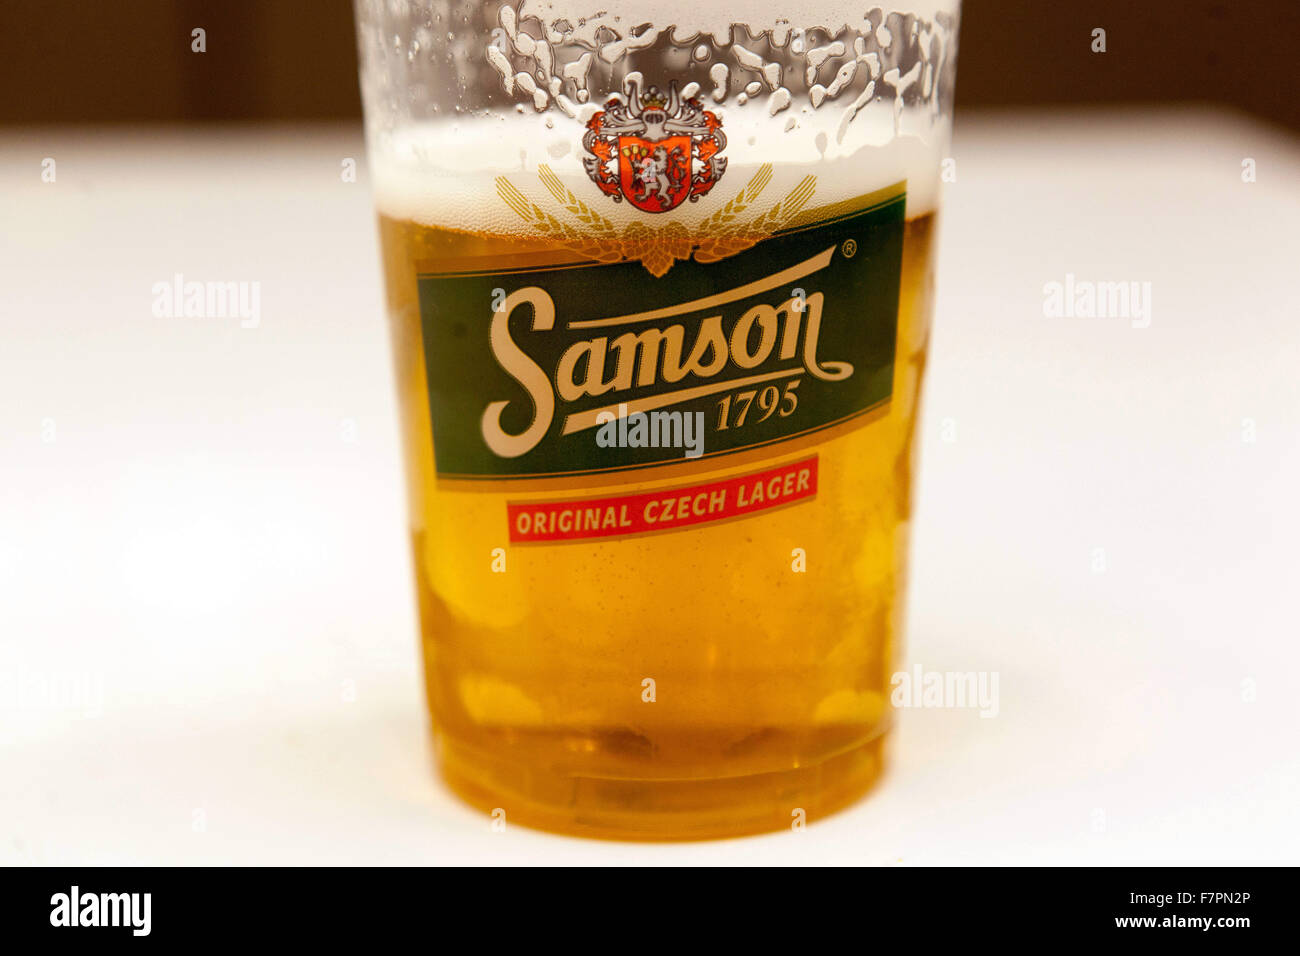 Tschechisches Bier Marken Samson in einem Glas Stockfoto